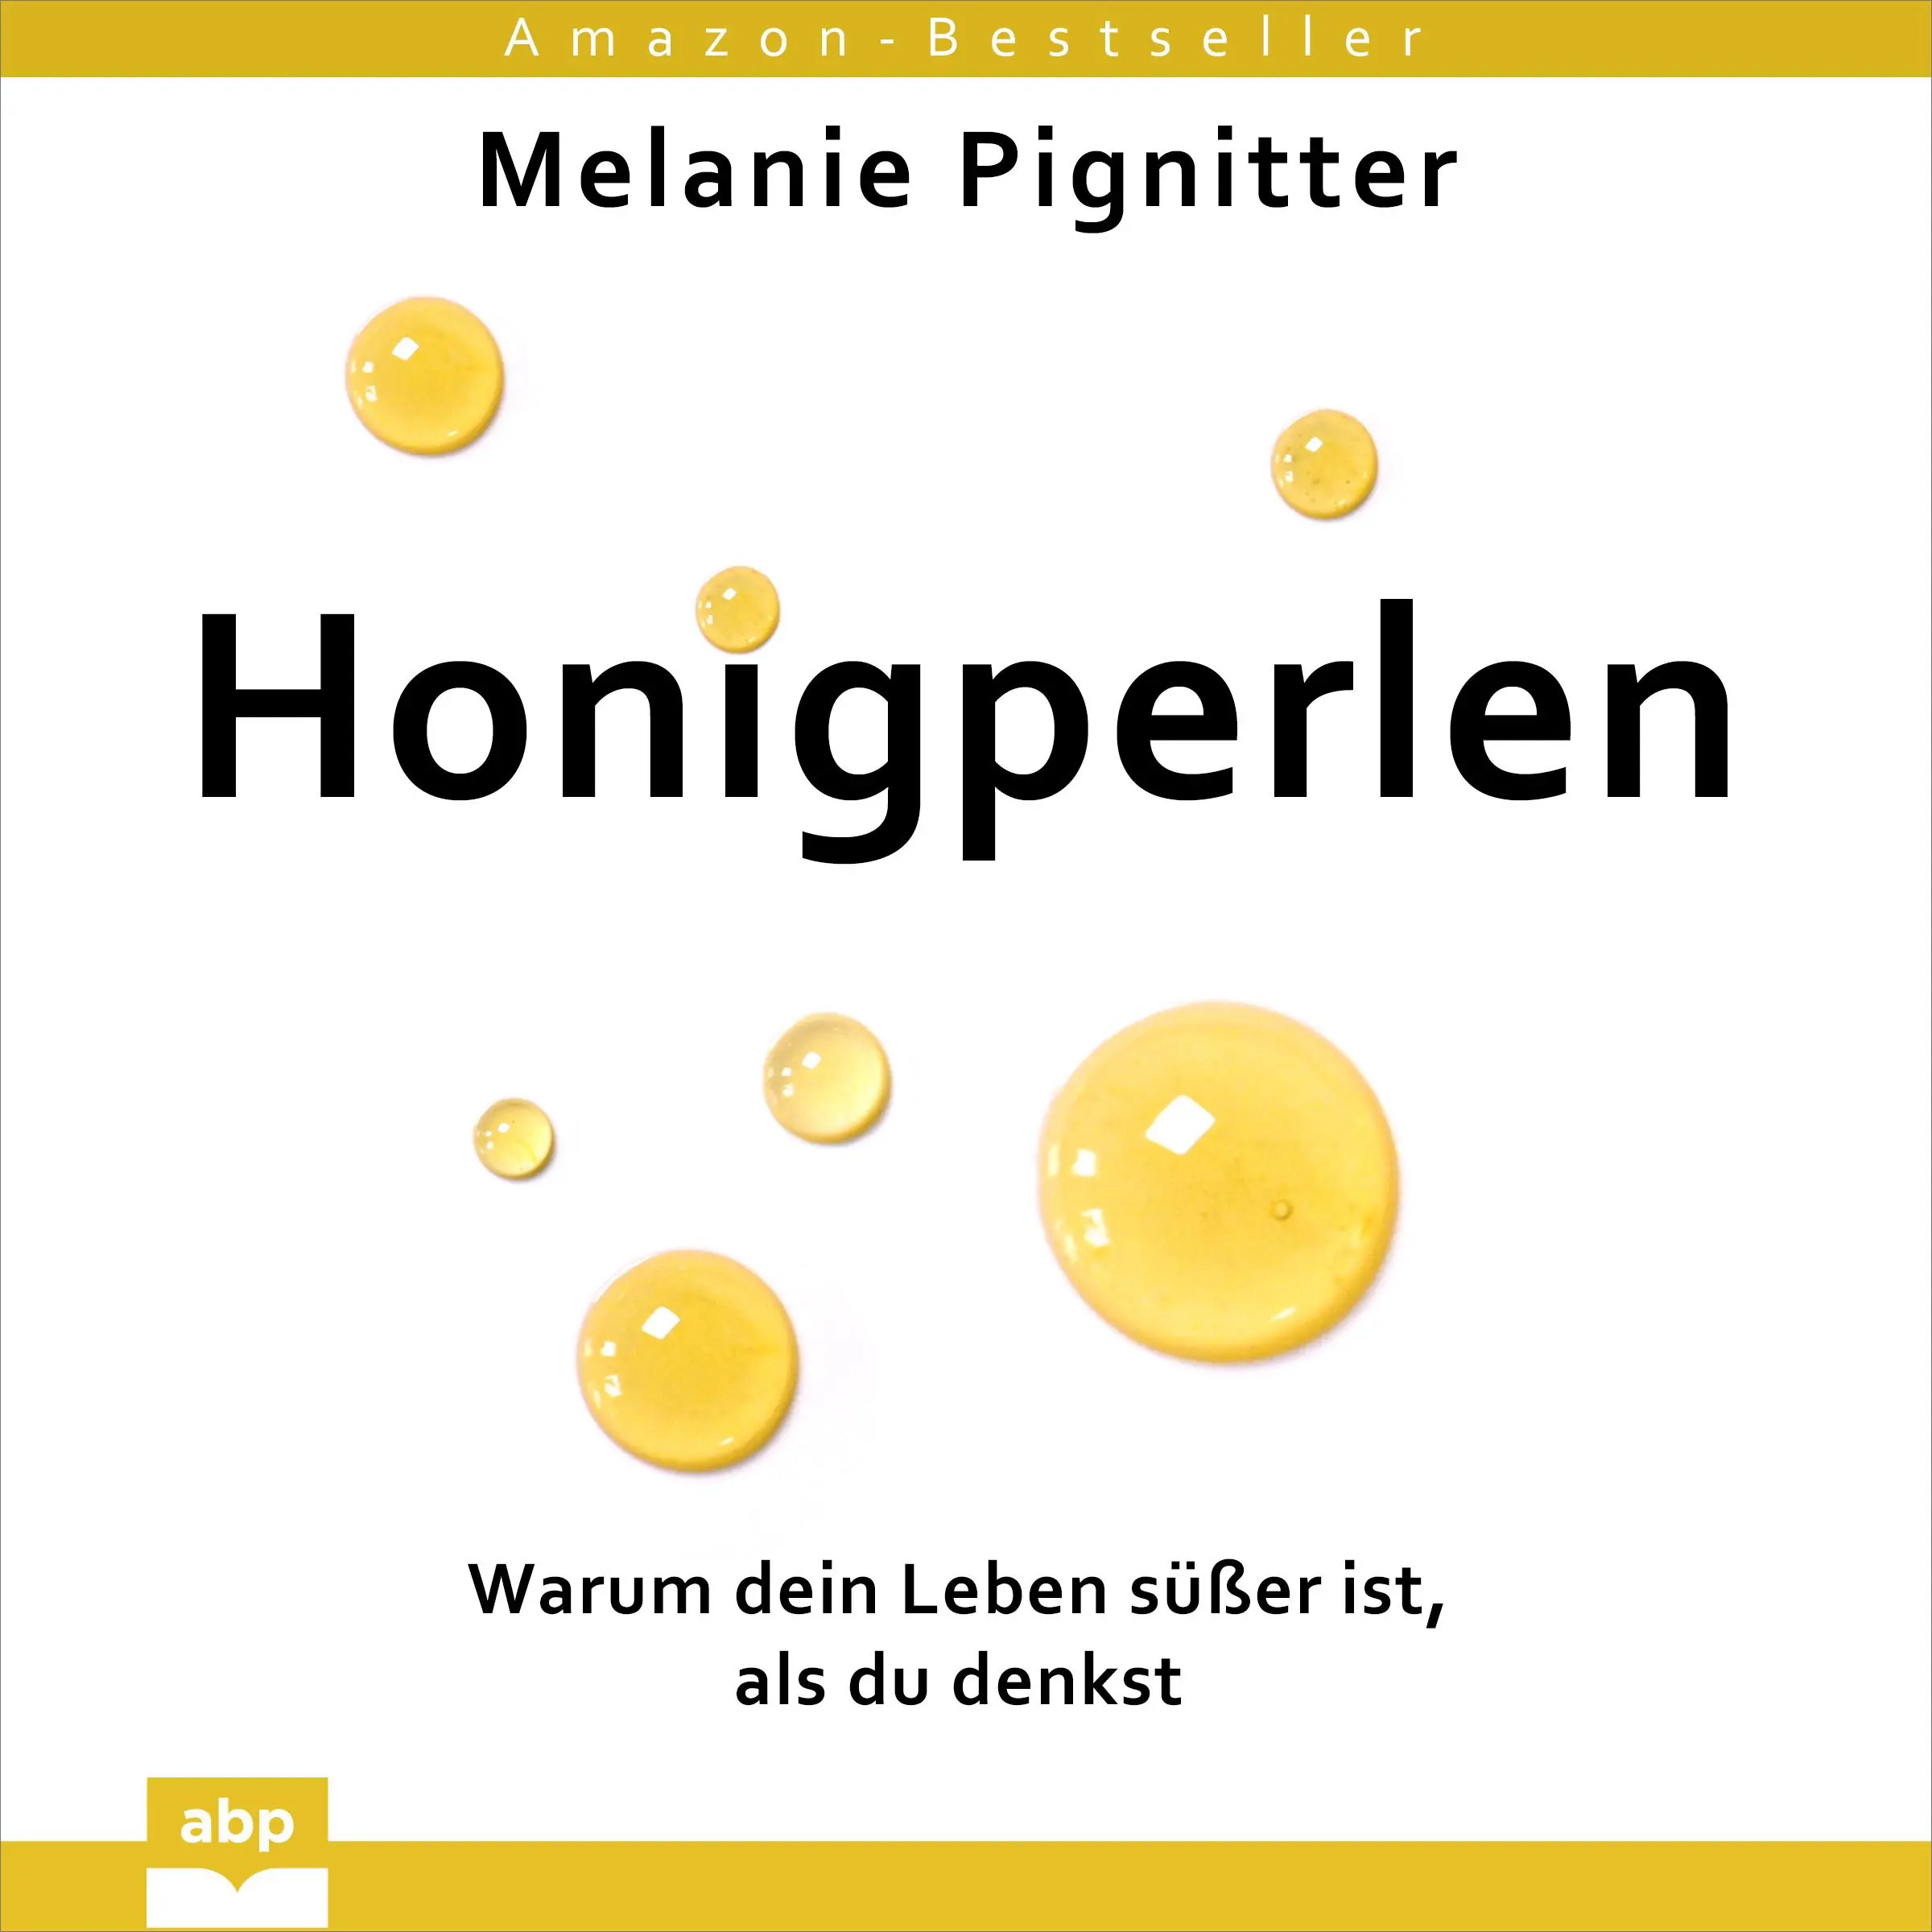 Honigperlen by Melanie Pignitter Audiobook